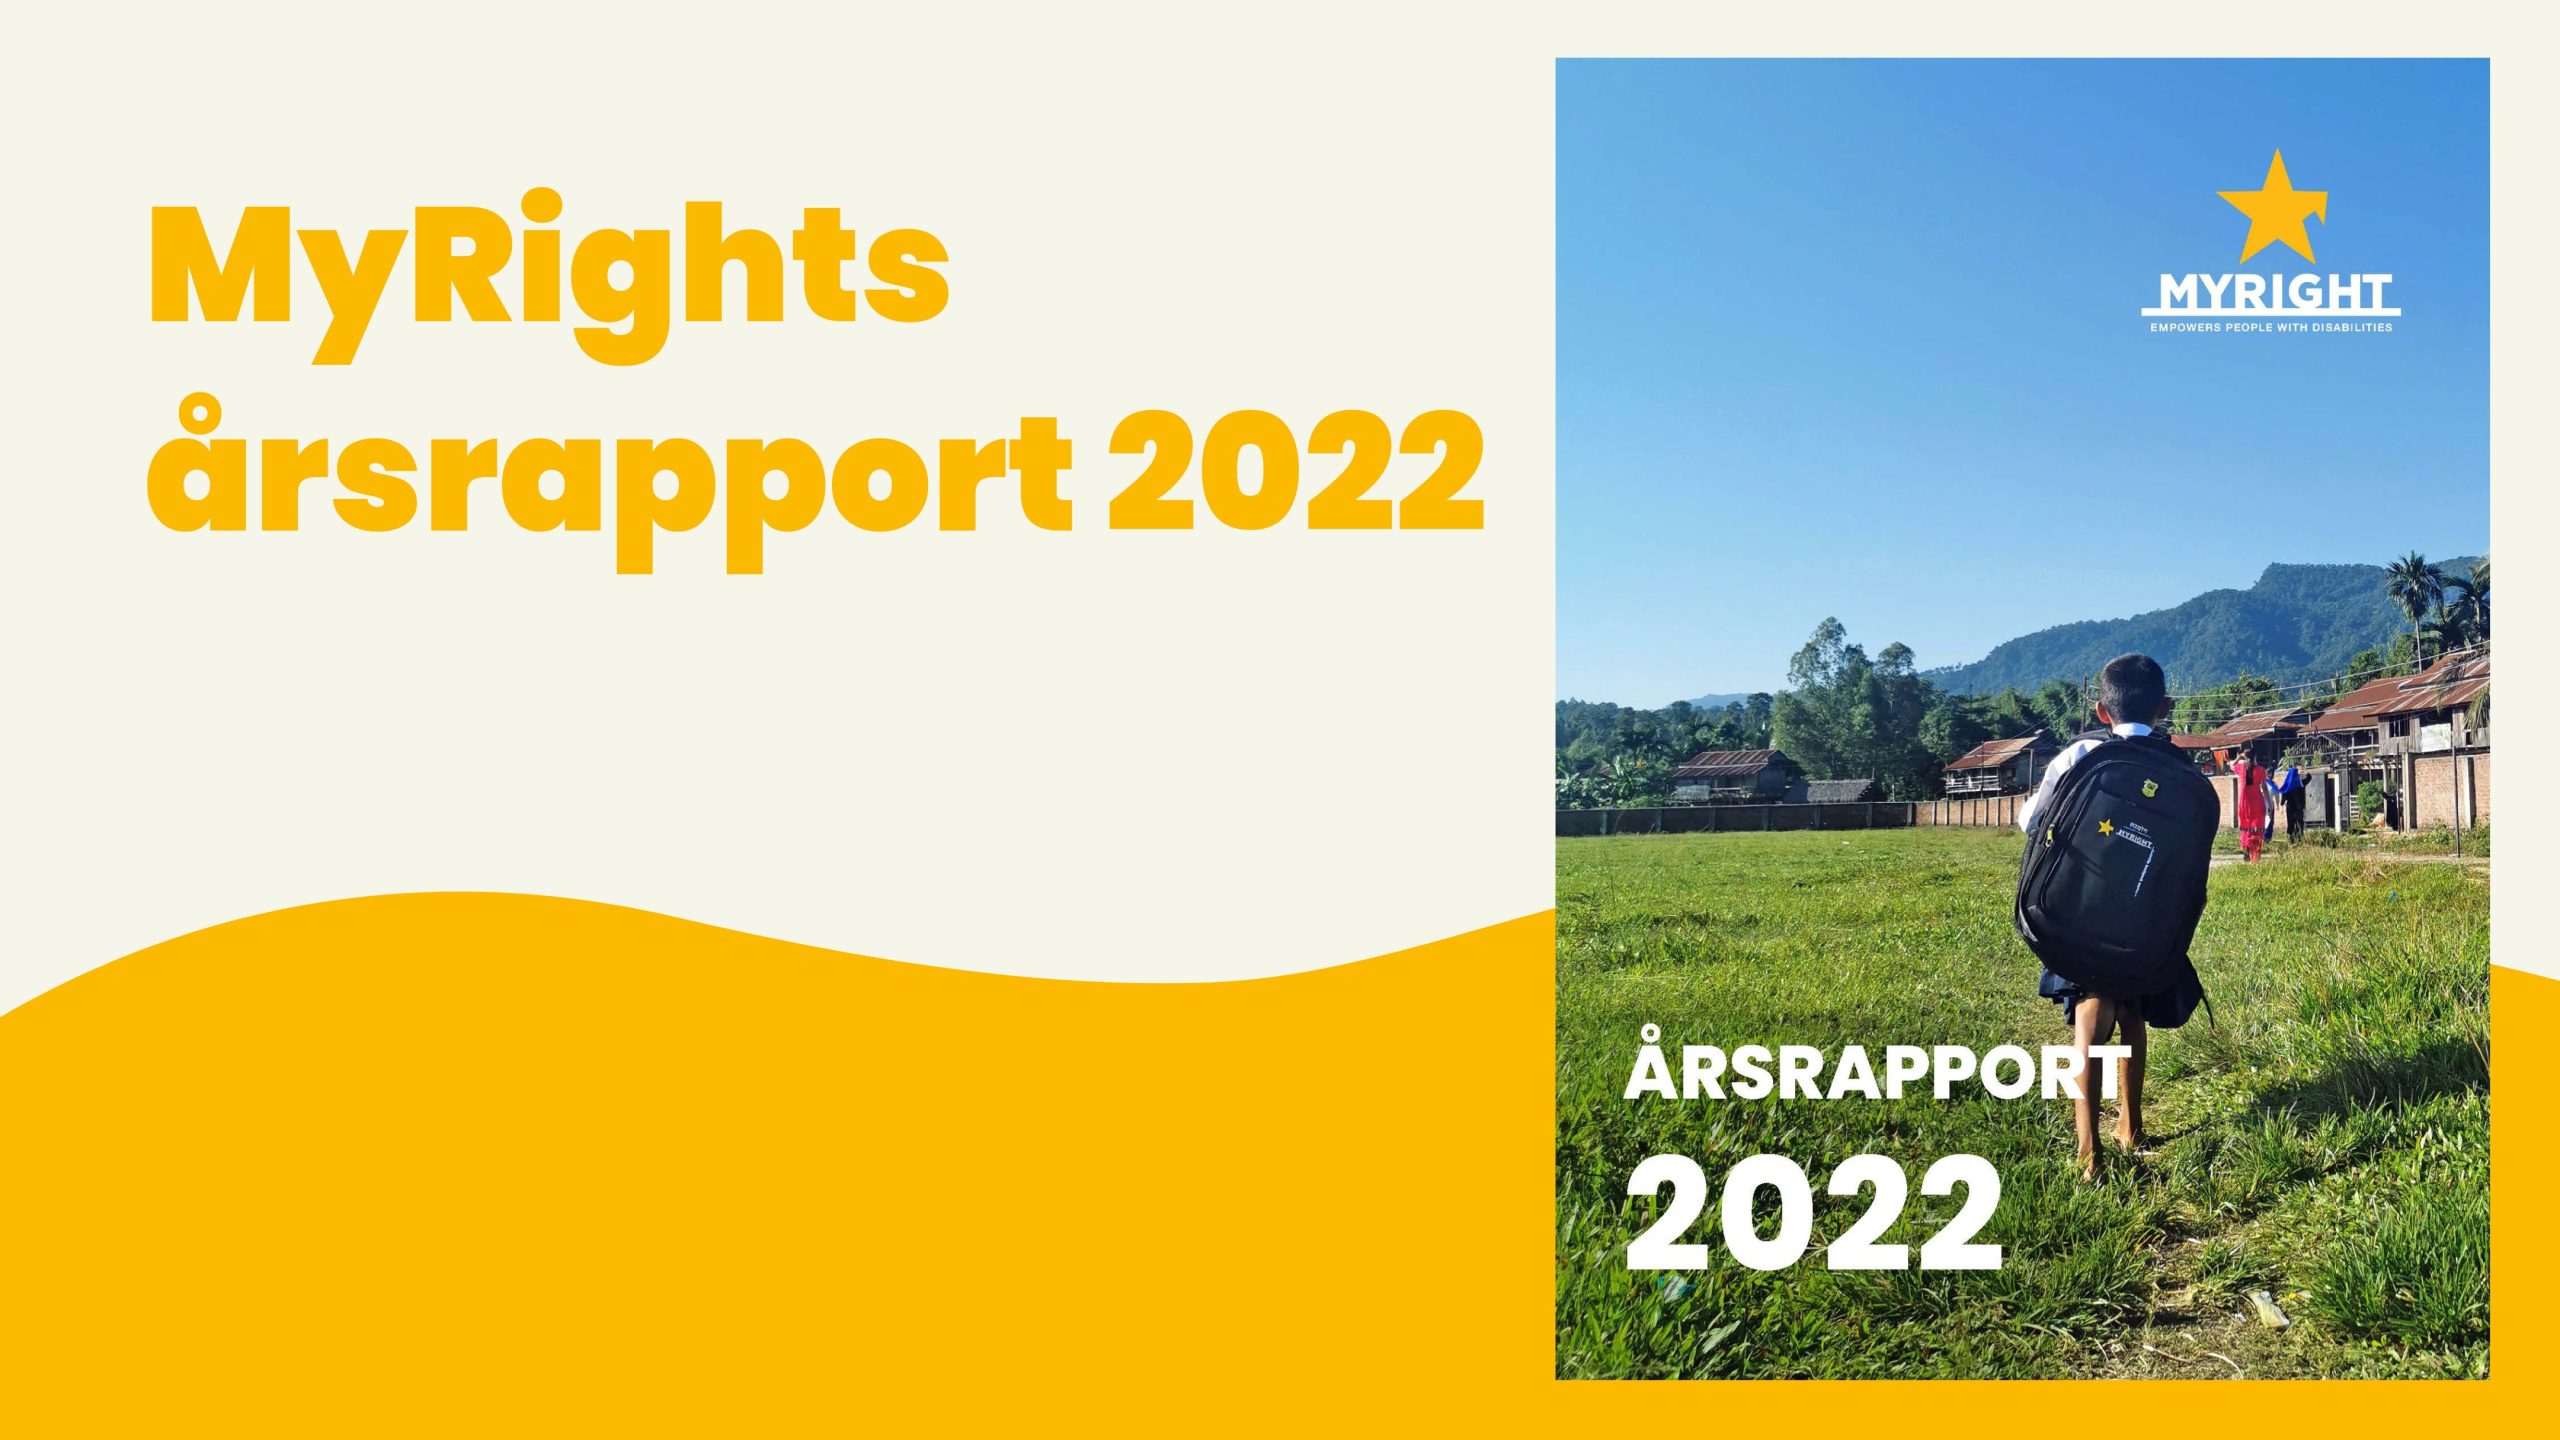 Omslagsbild på årsrapporten och texten MyRights årsrapport 2022